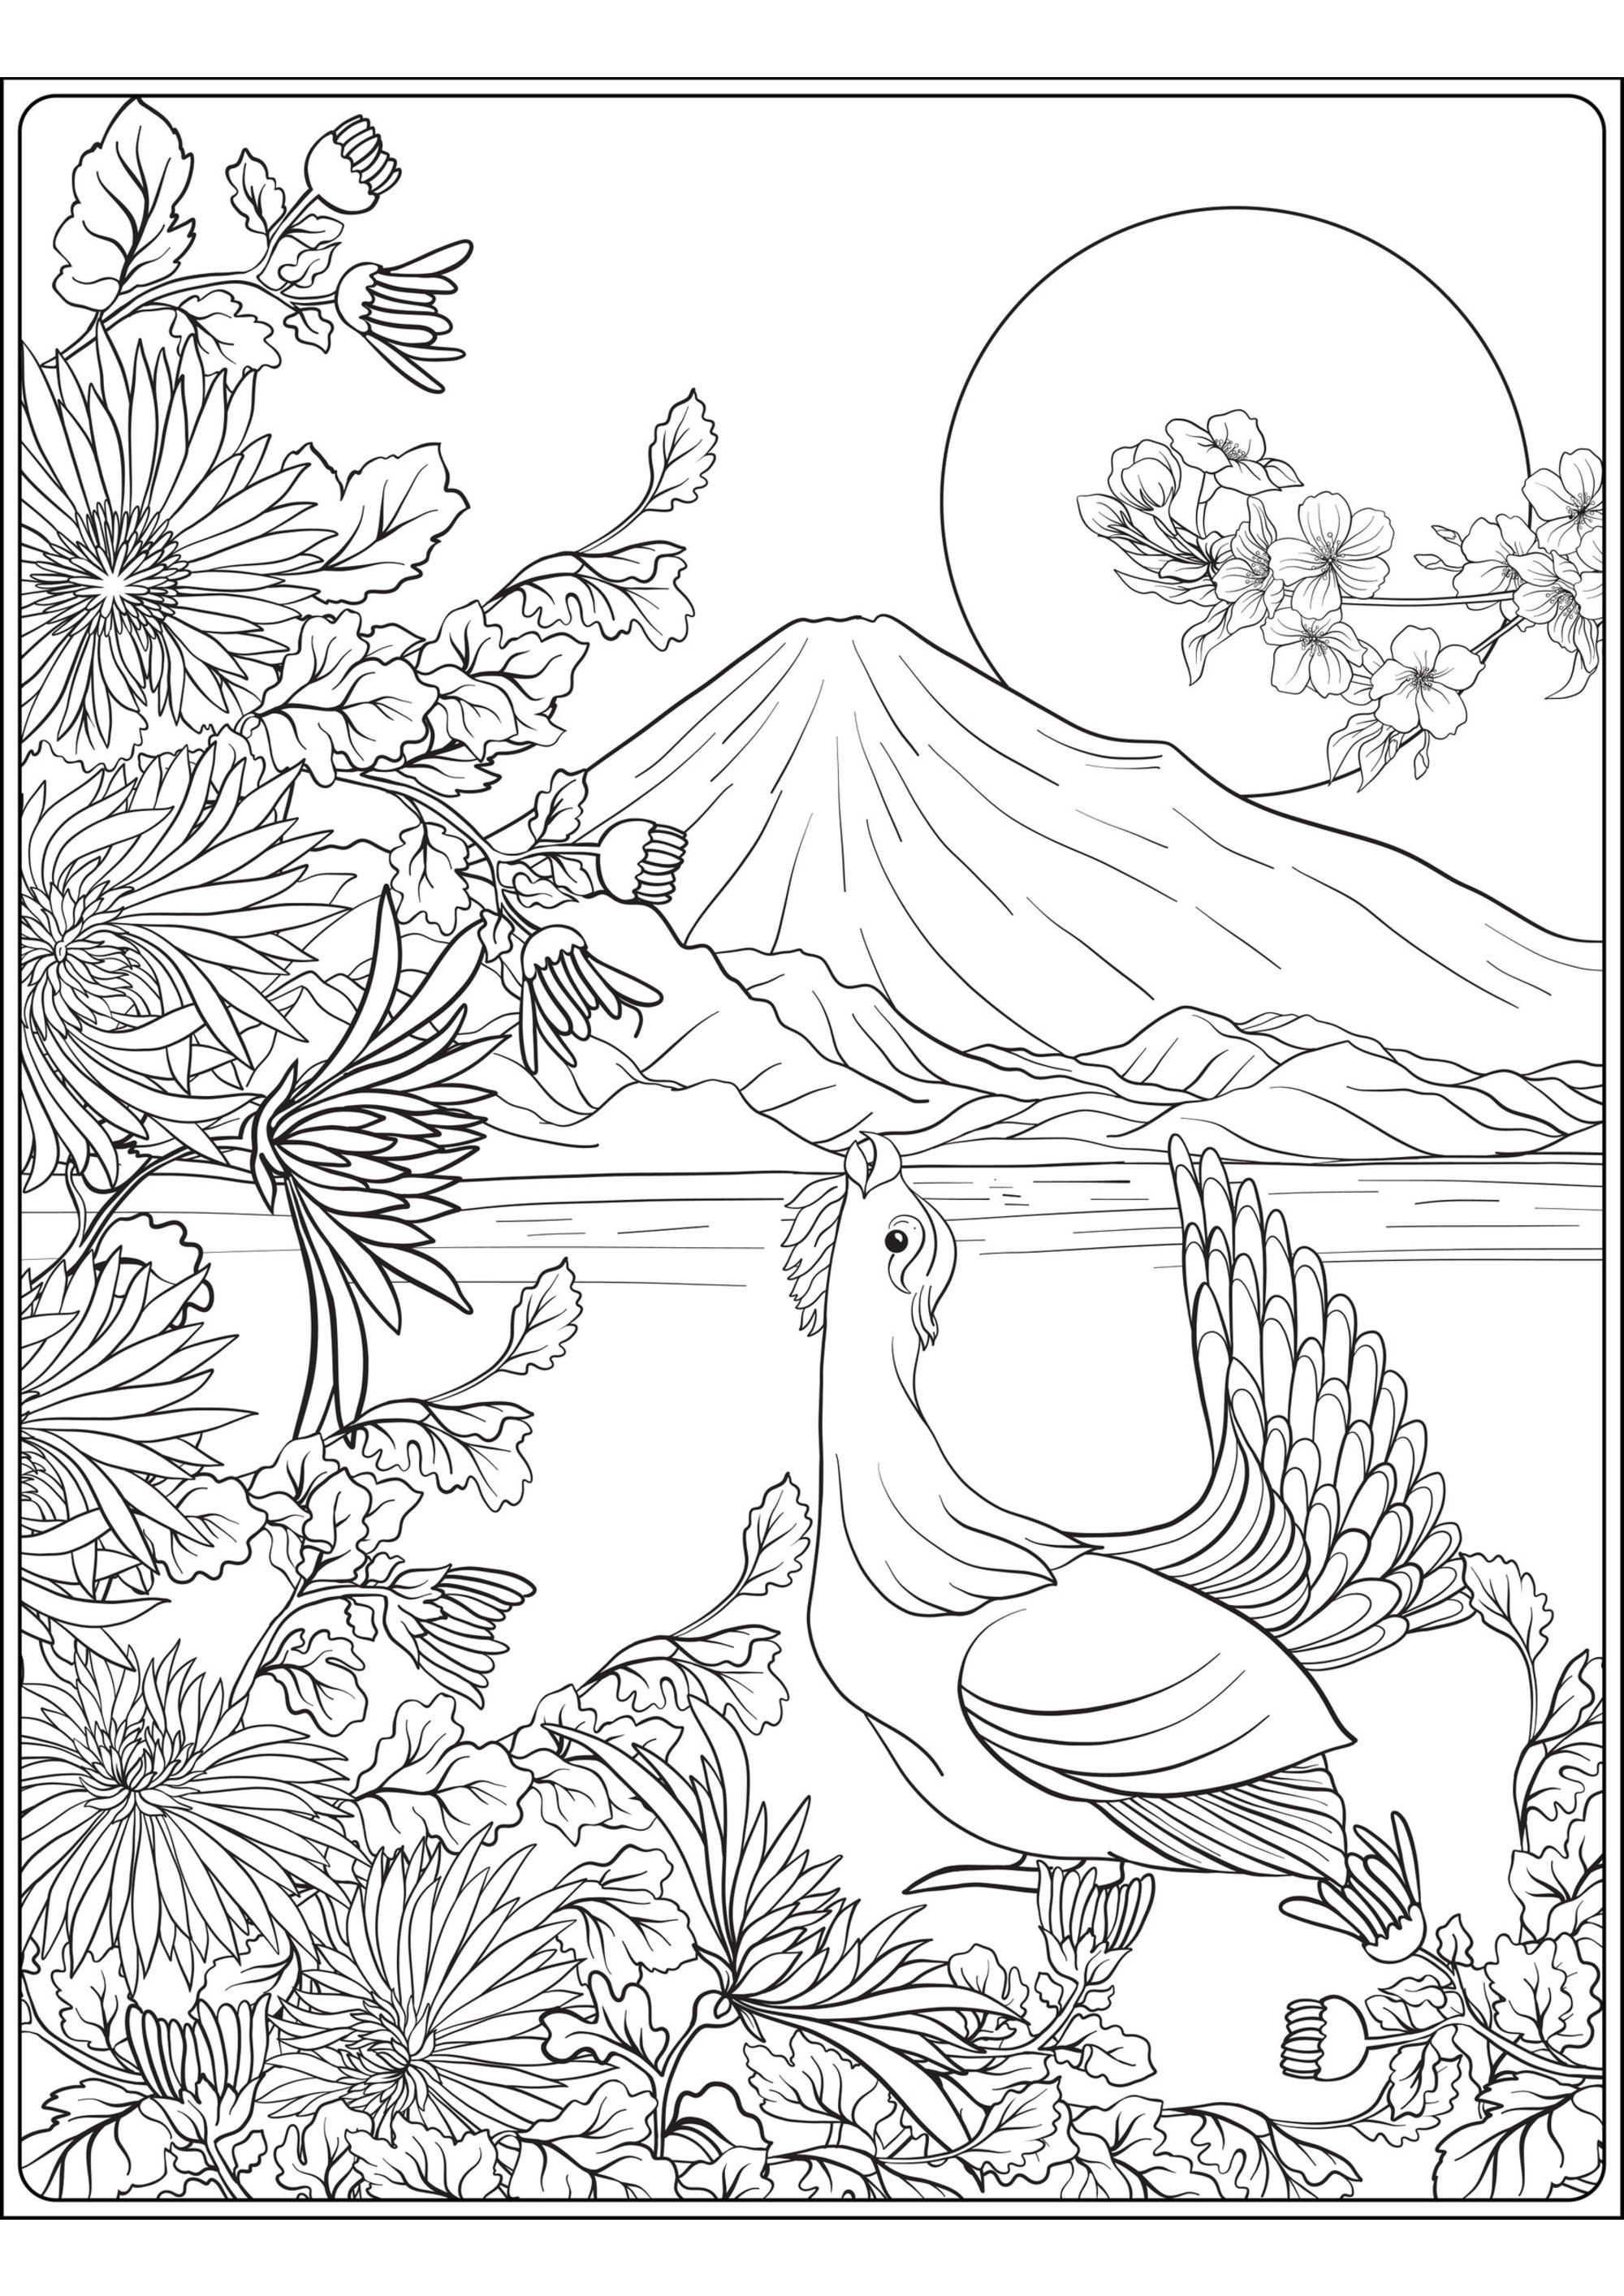 Mont Fuji et oiseau. Un superbe coloriage sur le thème du Japon, avec un oiseau, le Mont Fuji, et un premier plan rempli de jolies plantes et fleurs, Artiste : Elena Besedina   Source : 123rf